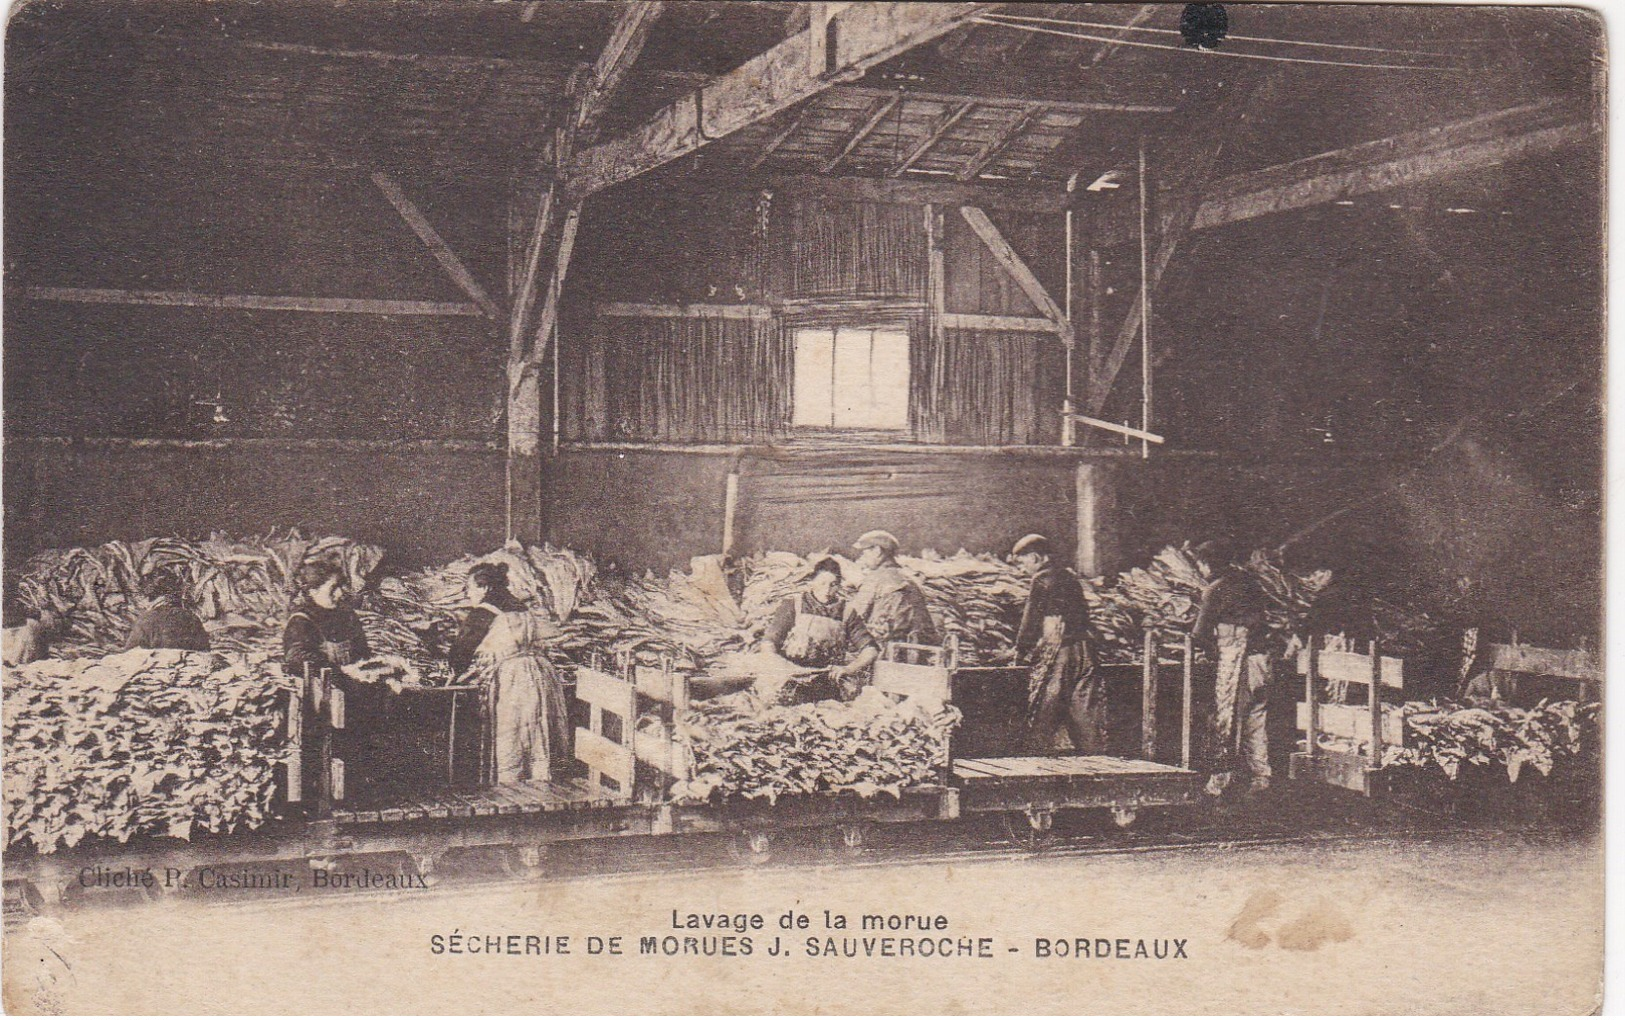 BORDEAUX Secherie De Morues SAUVEROCHE - Bordeaux